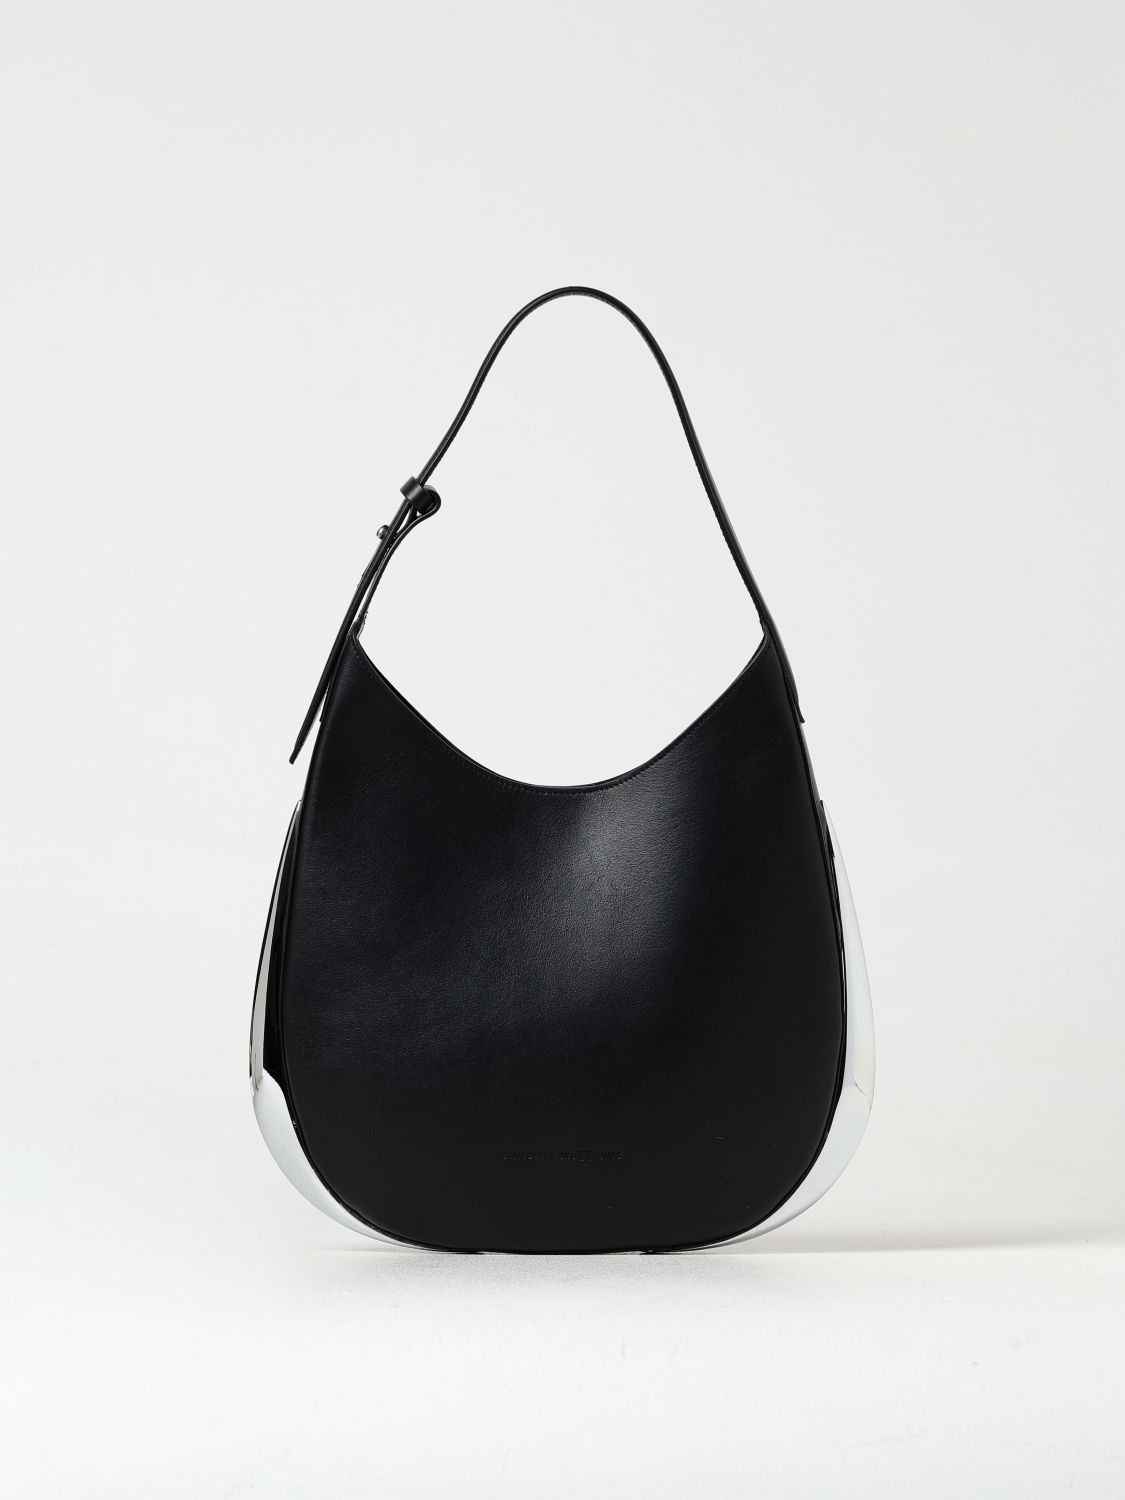 Benedetta Bruzziches Handbag BENEDETTA BRUZZICHES Woman color Black